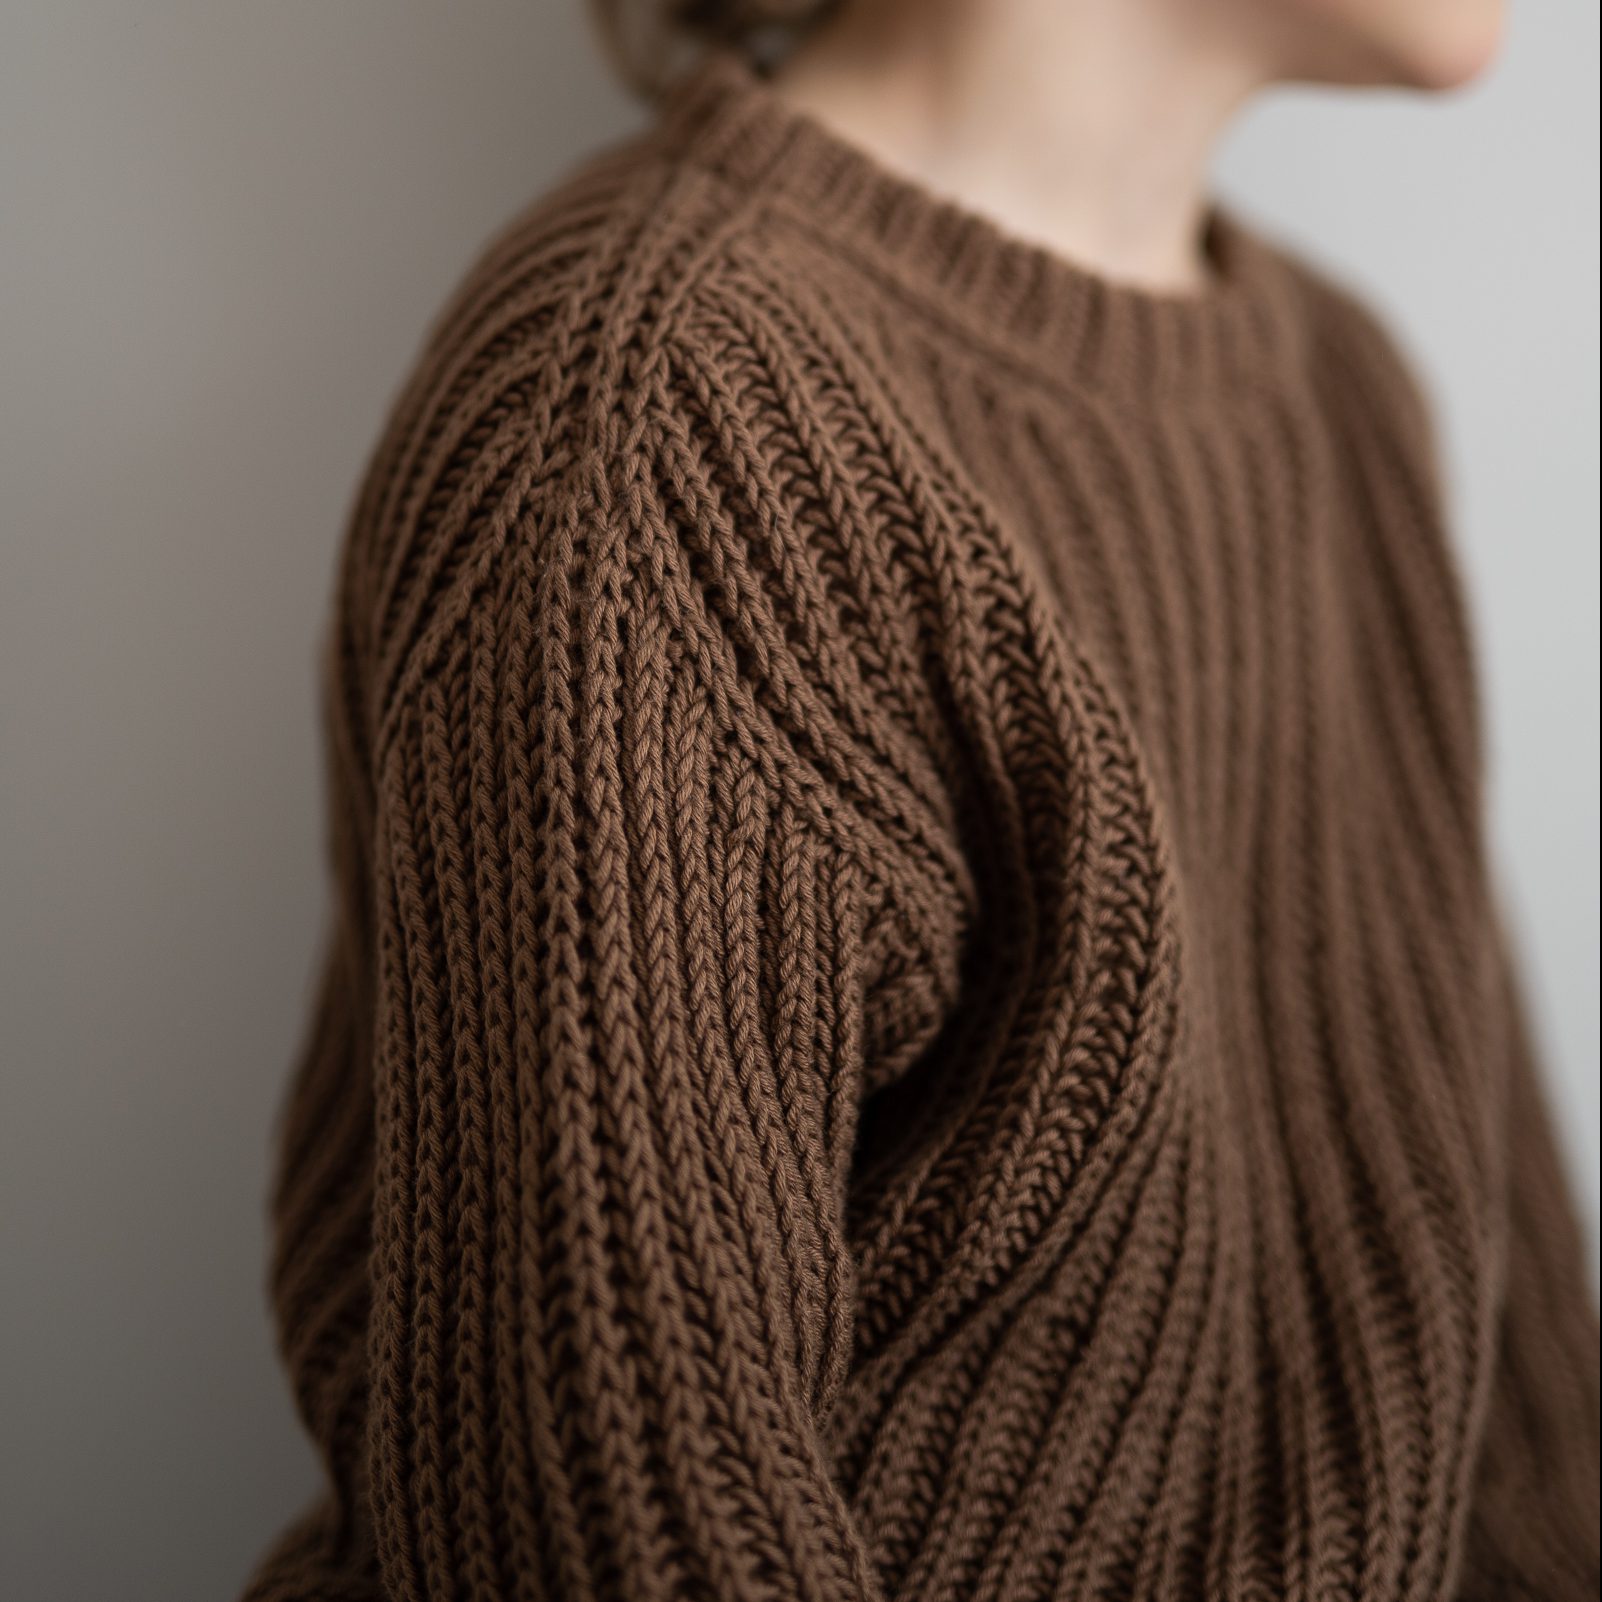  - Athen sweater | Kids brioche sweater | Knitting kit - by HipKnitShop - 30/04/2021